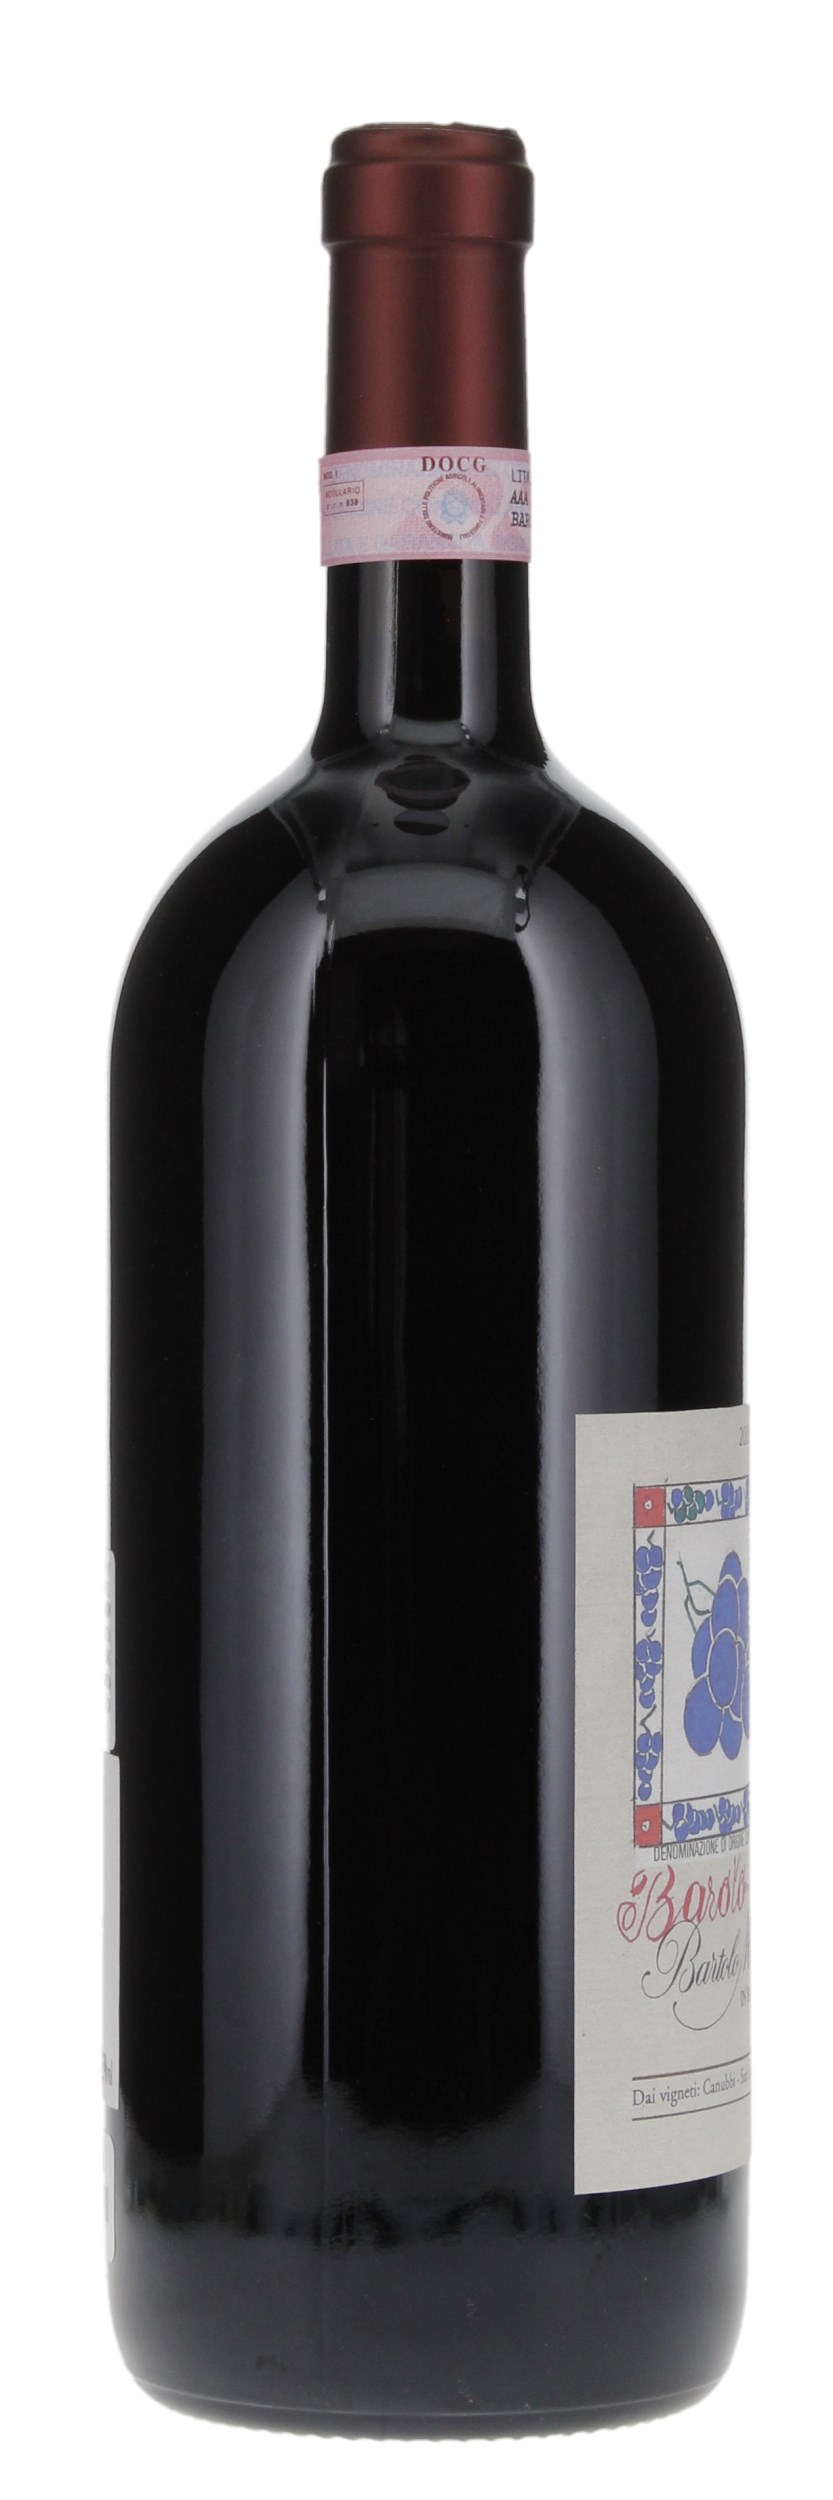 2008 Bartolo Mascarello Barolo Winemaker Artist Label, 1.5ltr